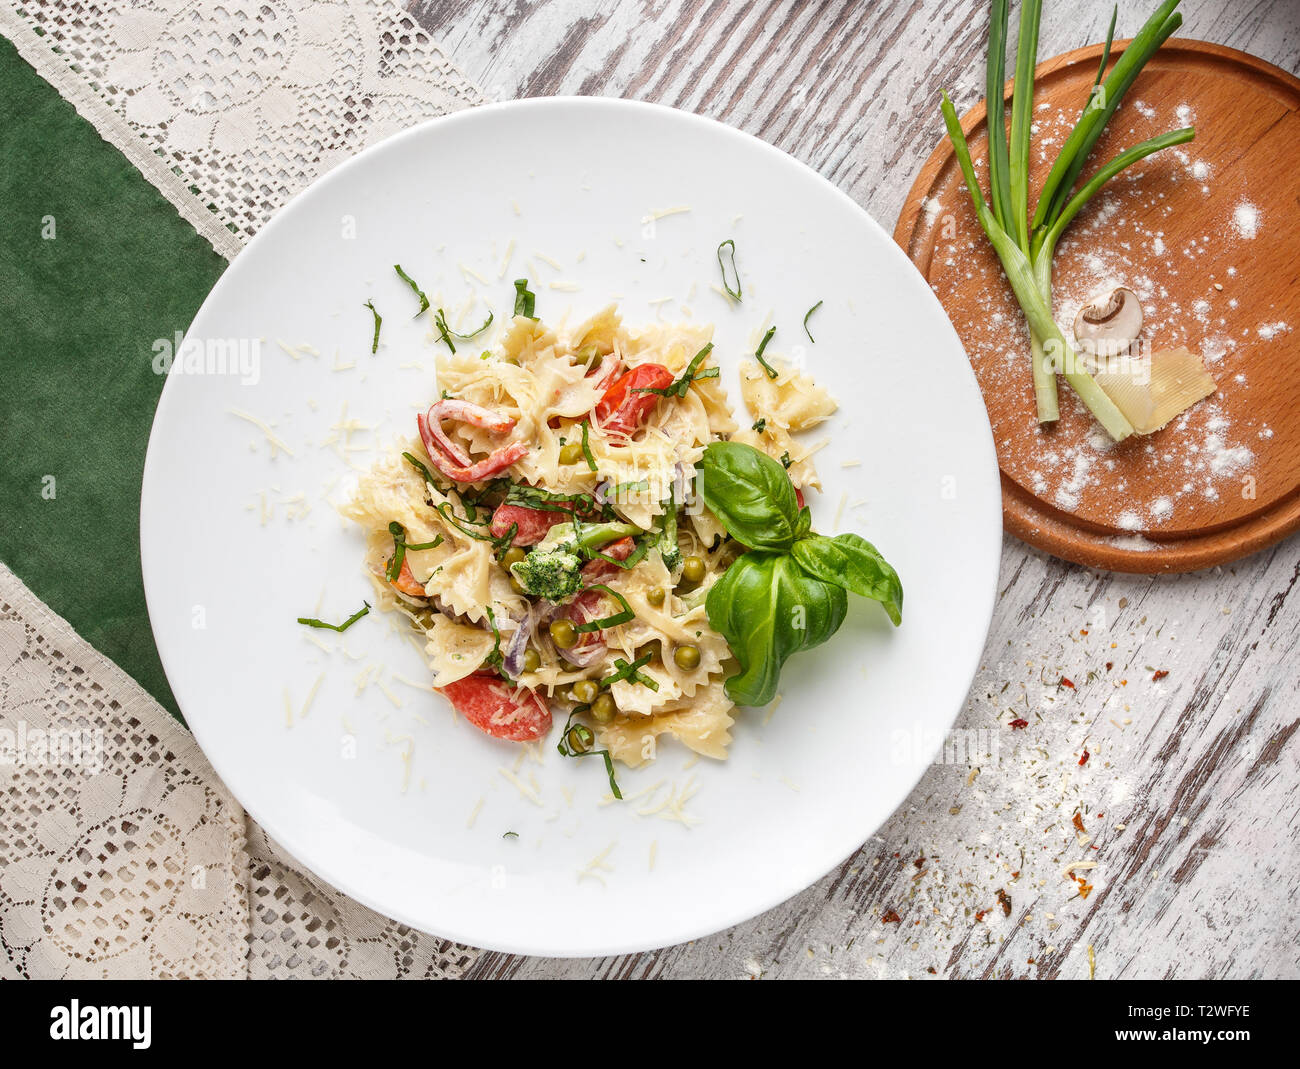 Poster für Restaurants. Salat mit Pasta, Garnelen, grüne Erbsen und dekorierten Kräutern. Auf einem hellen Hintergrund. Flay legen. Ansicht von oben Stockfoto